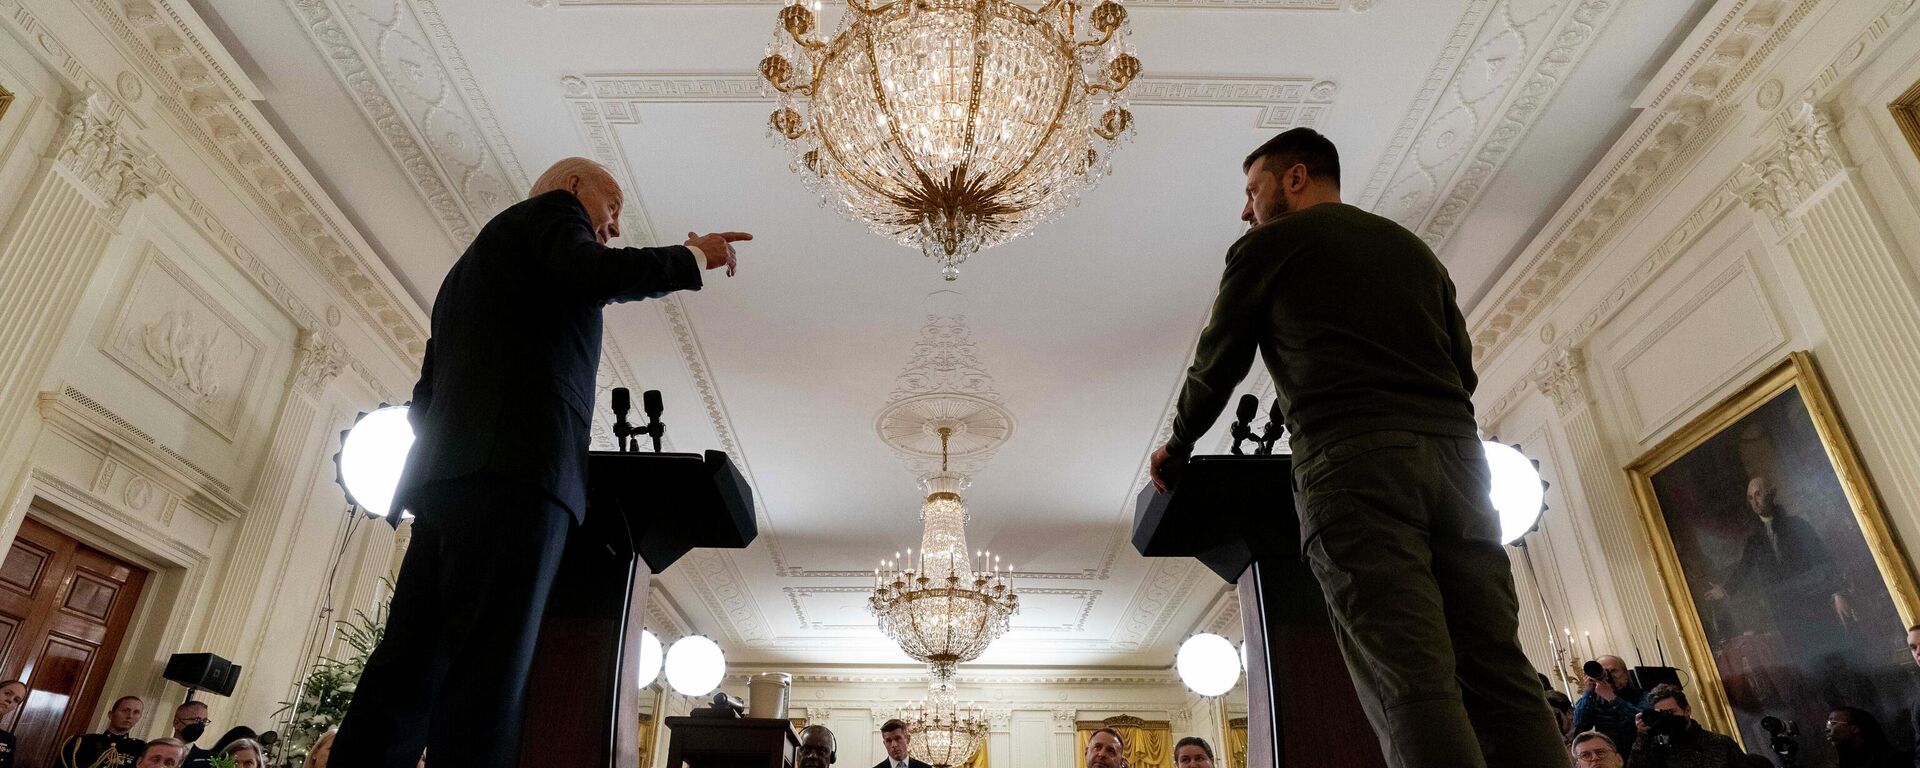 Глава США Джо Байден и президент Украины Владимир Зеленский во время пресс-конференции в Восточном зале Белого дома в Вашингтоне - Sputnik Кыргызстан, 1920, 25.12.2022